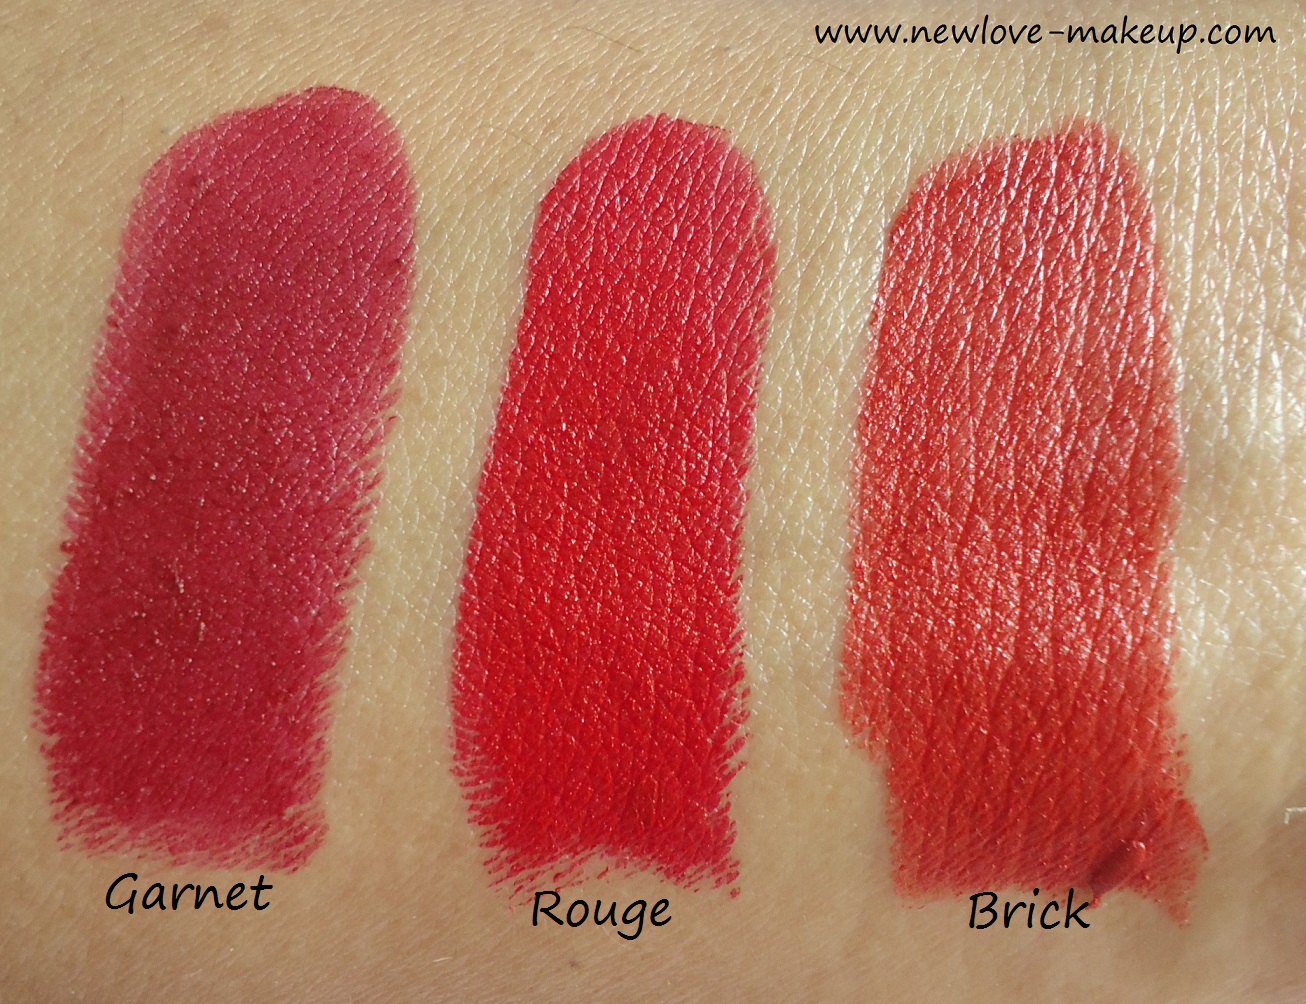 L’Oreal Paris Color Riche Pure Reds Lipsticks Review,Swatches.